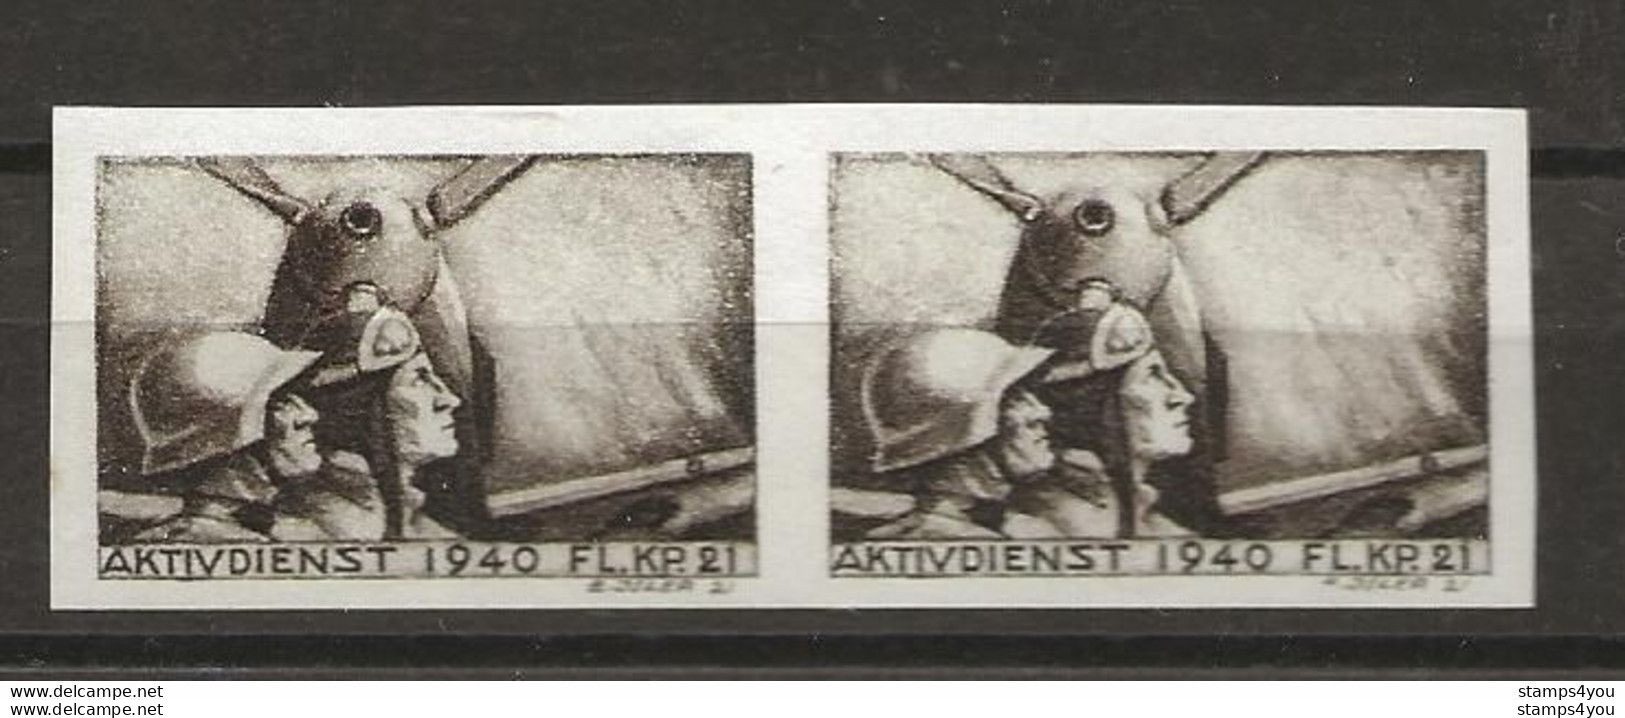 406 - 5b - Paire Timbres Non-dentelés Neufs  "Aktivdienst 1940 Fl. Kp. 21" - Vignettes